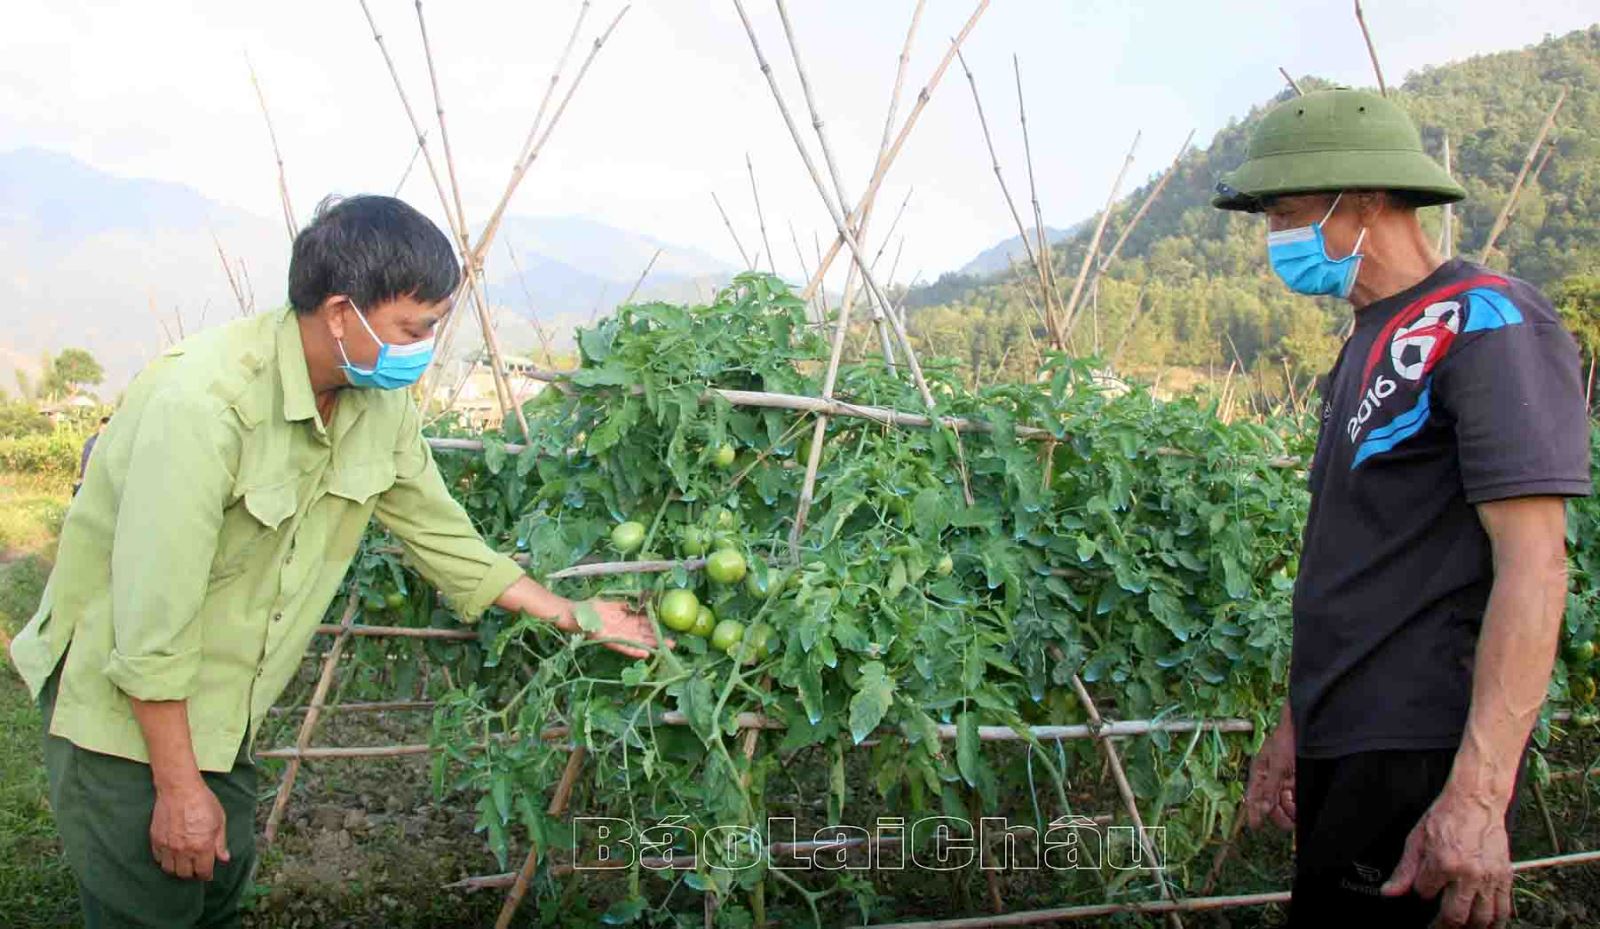 Bí thư Chi bộ bản Sen Đông (xã Mường Than) hướng dẫn người dân chăm sóc cây cà chua. Ảnh: CTV